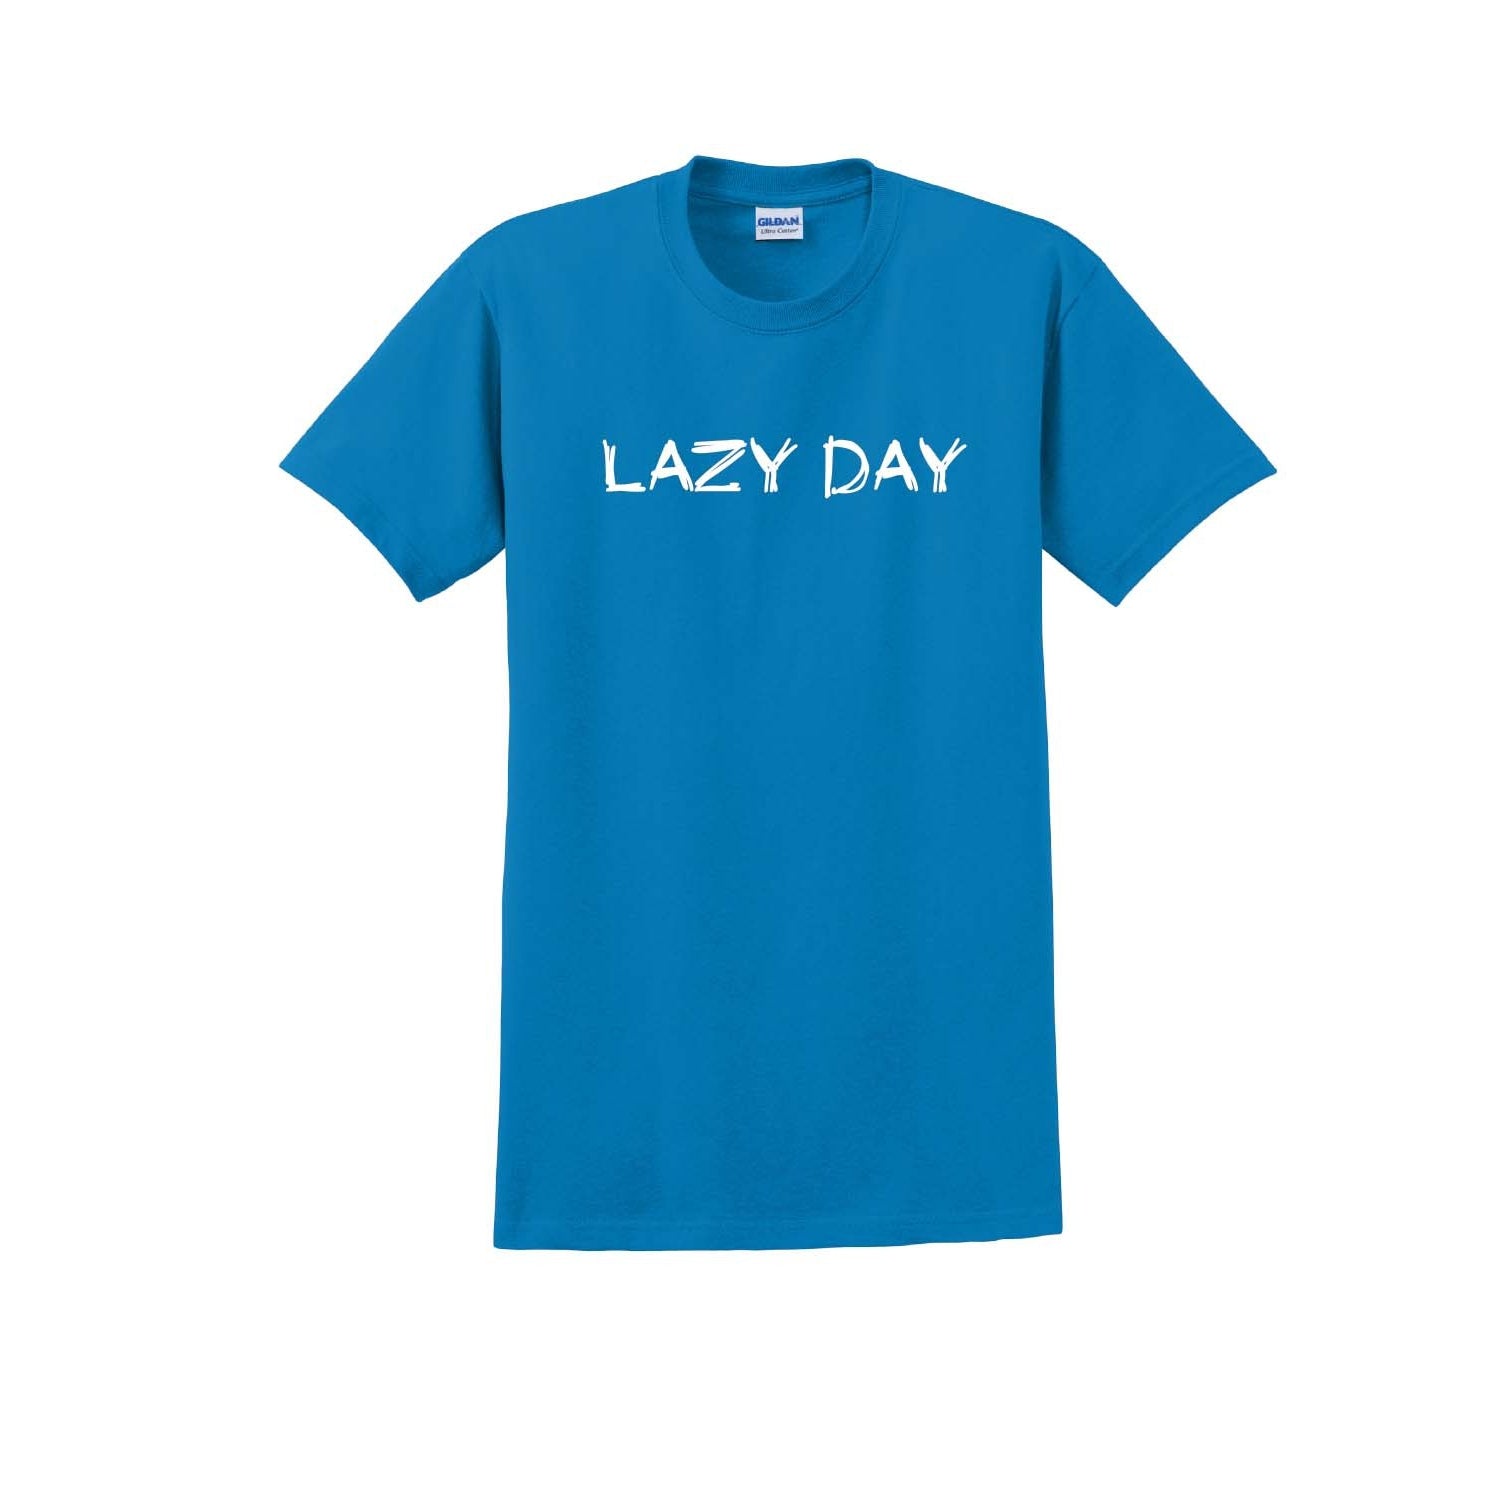 Lazy Days, by Nap Time®